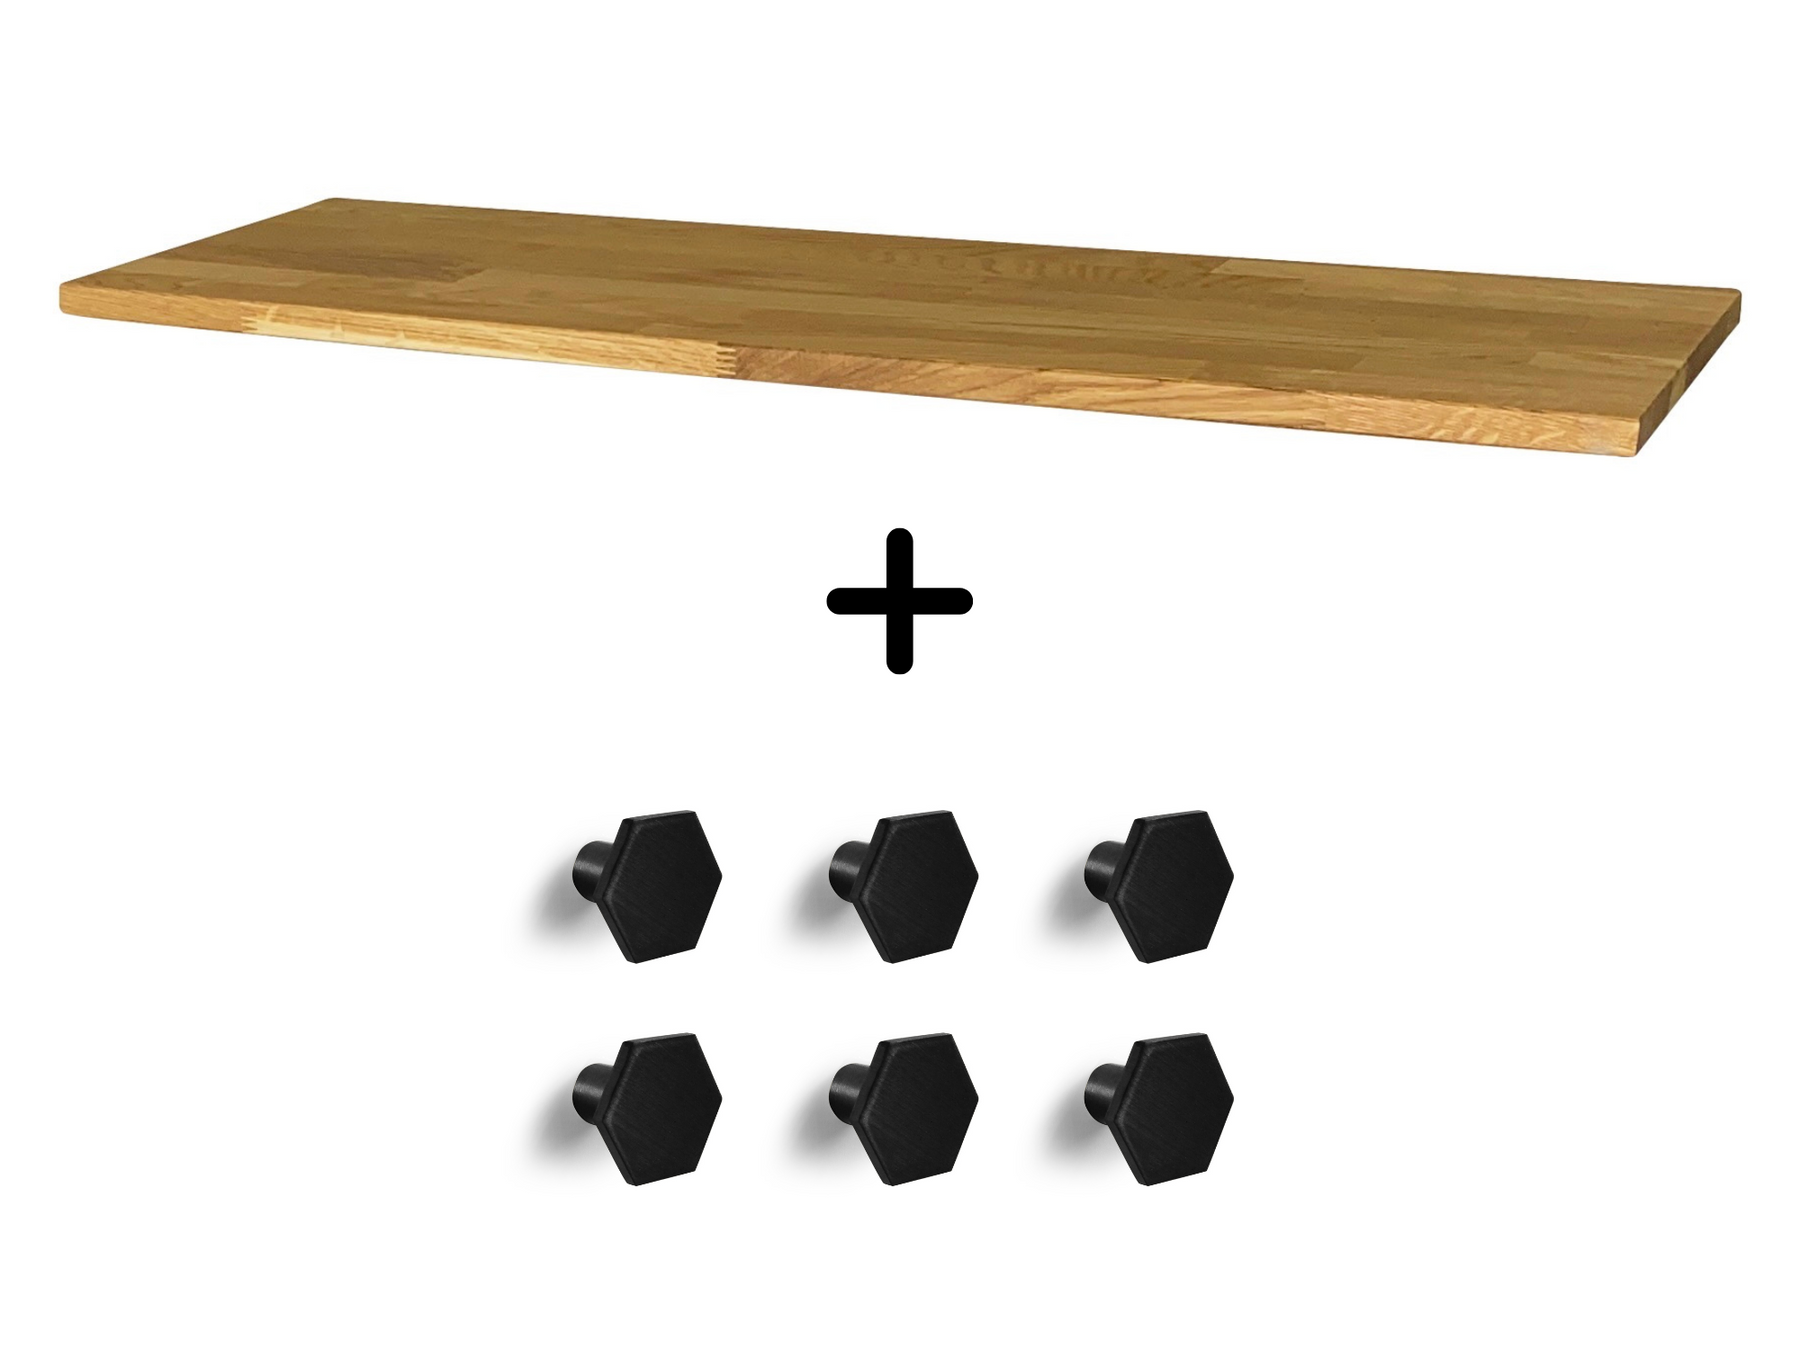 Hemnes Schuhschrank mit 3 Fächern Set, Massivholzplatte in Eiche Natur geölt, Möbelknöpfe Hexa 25mm schwarz